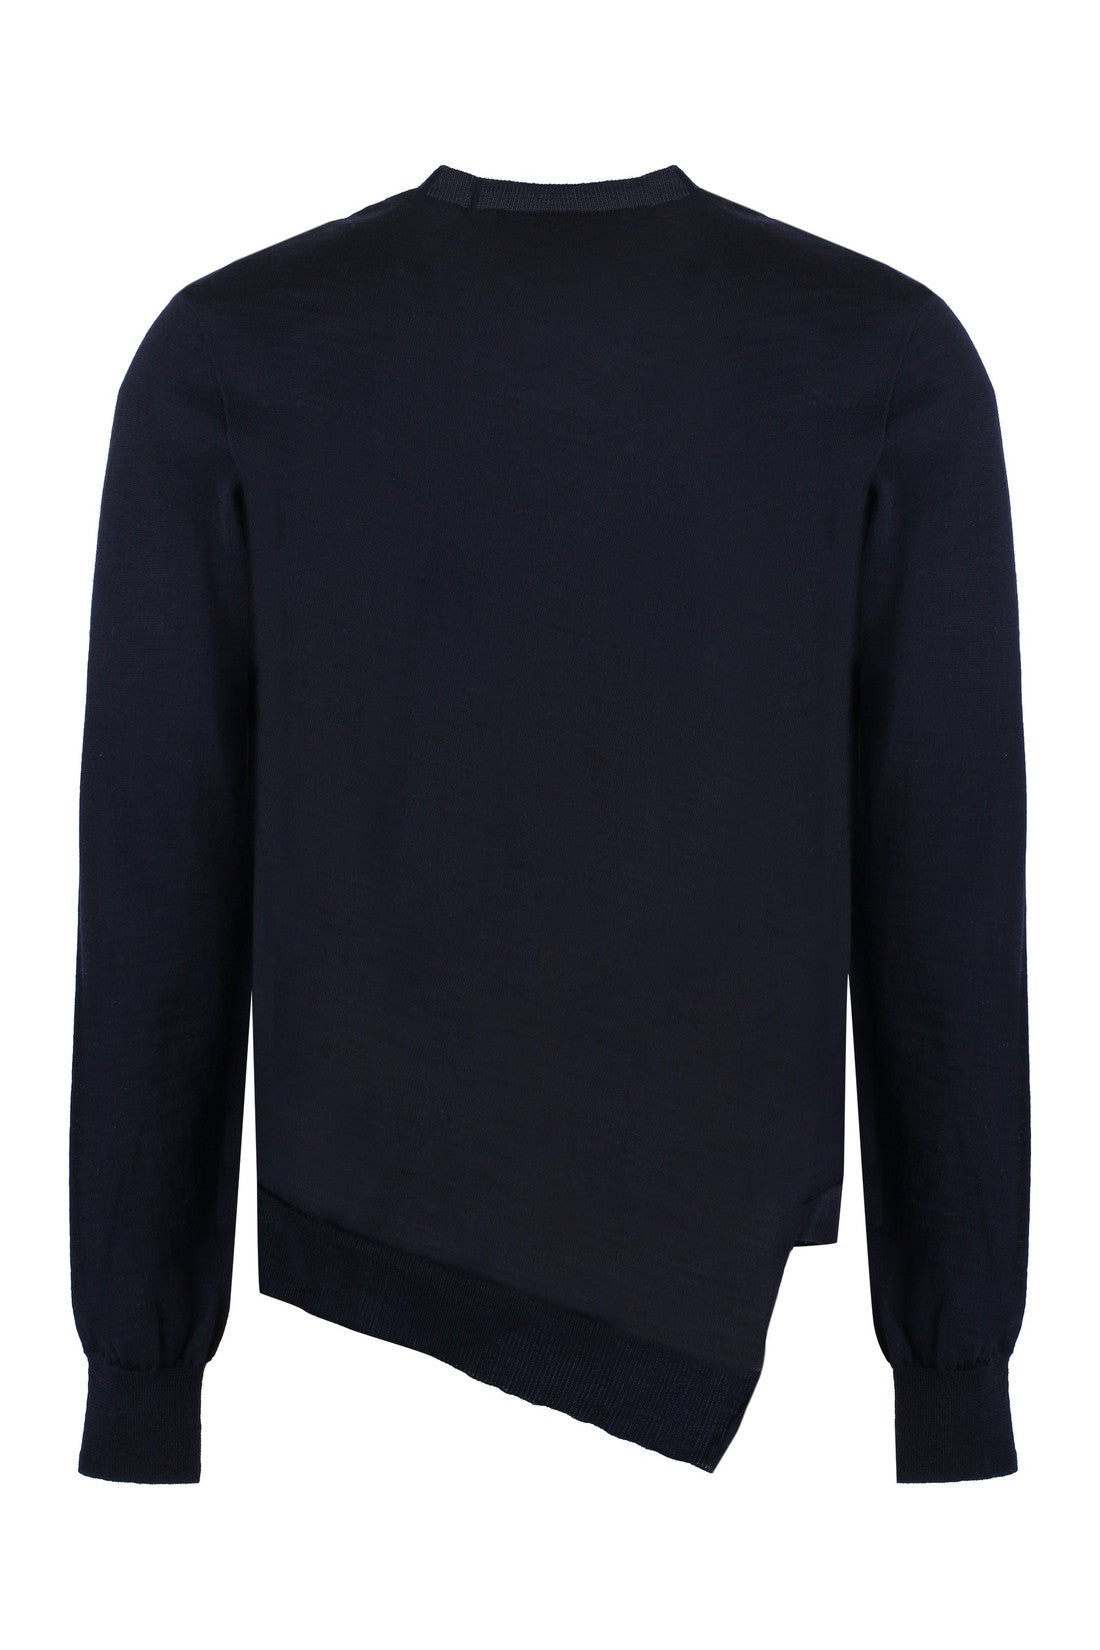 Comme des Garçons SHIRT-OUTLET-SALE-Lacoste X Comme des Garçons - Crew-neck wool sweater-ARCHIVIST